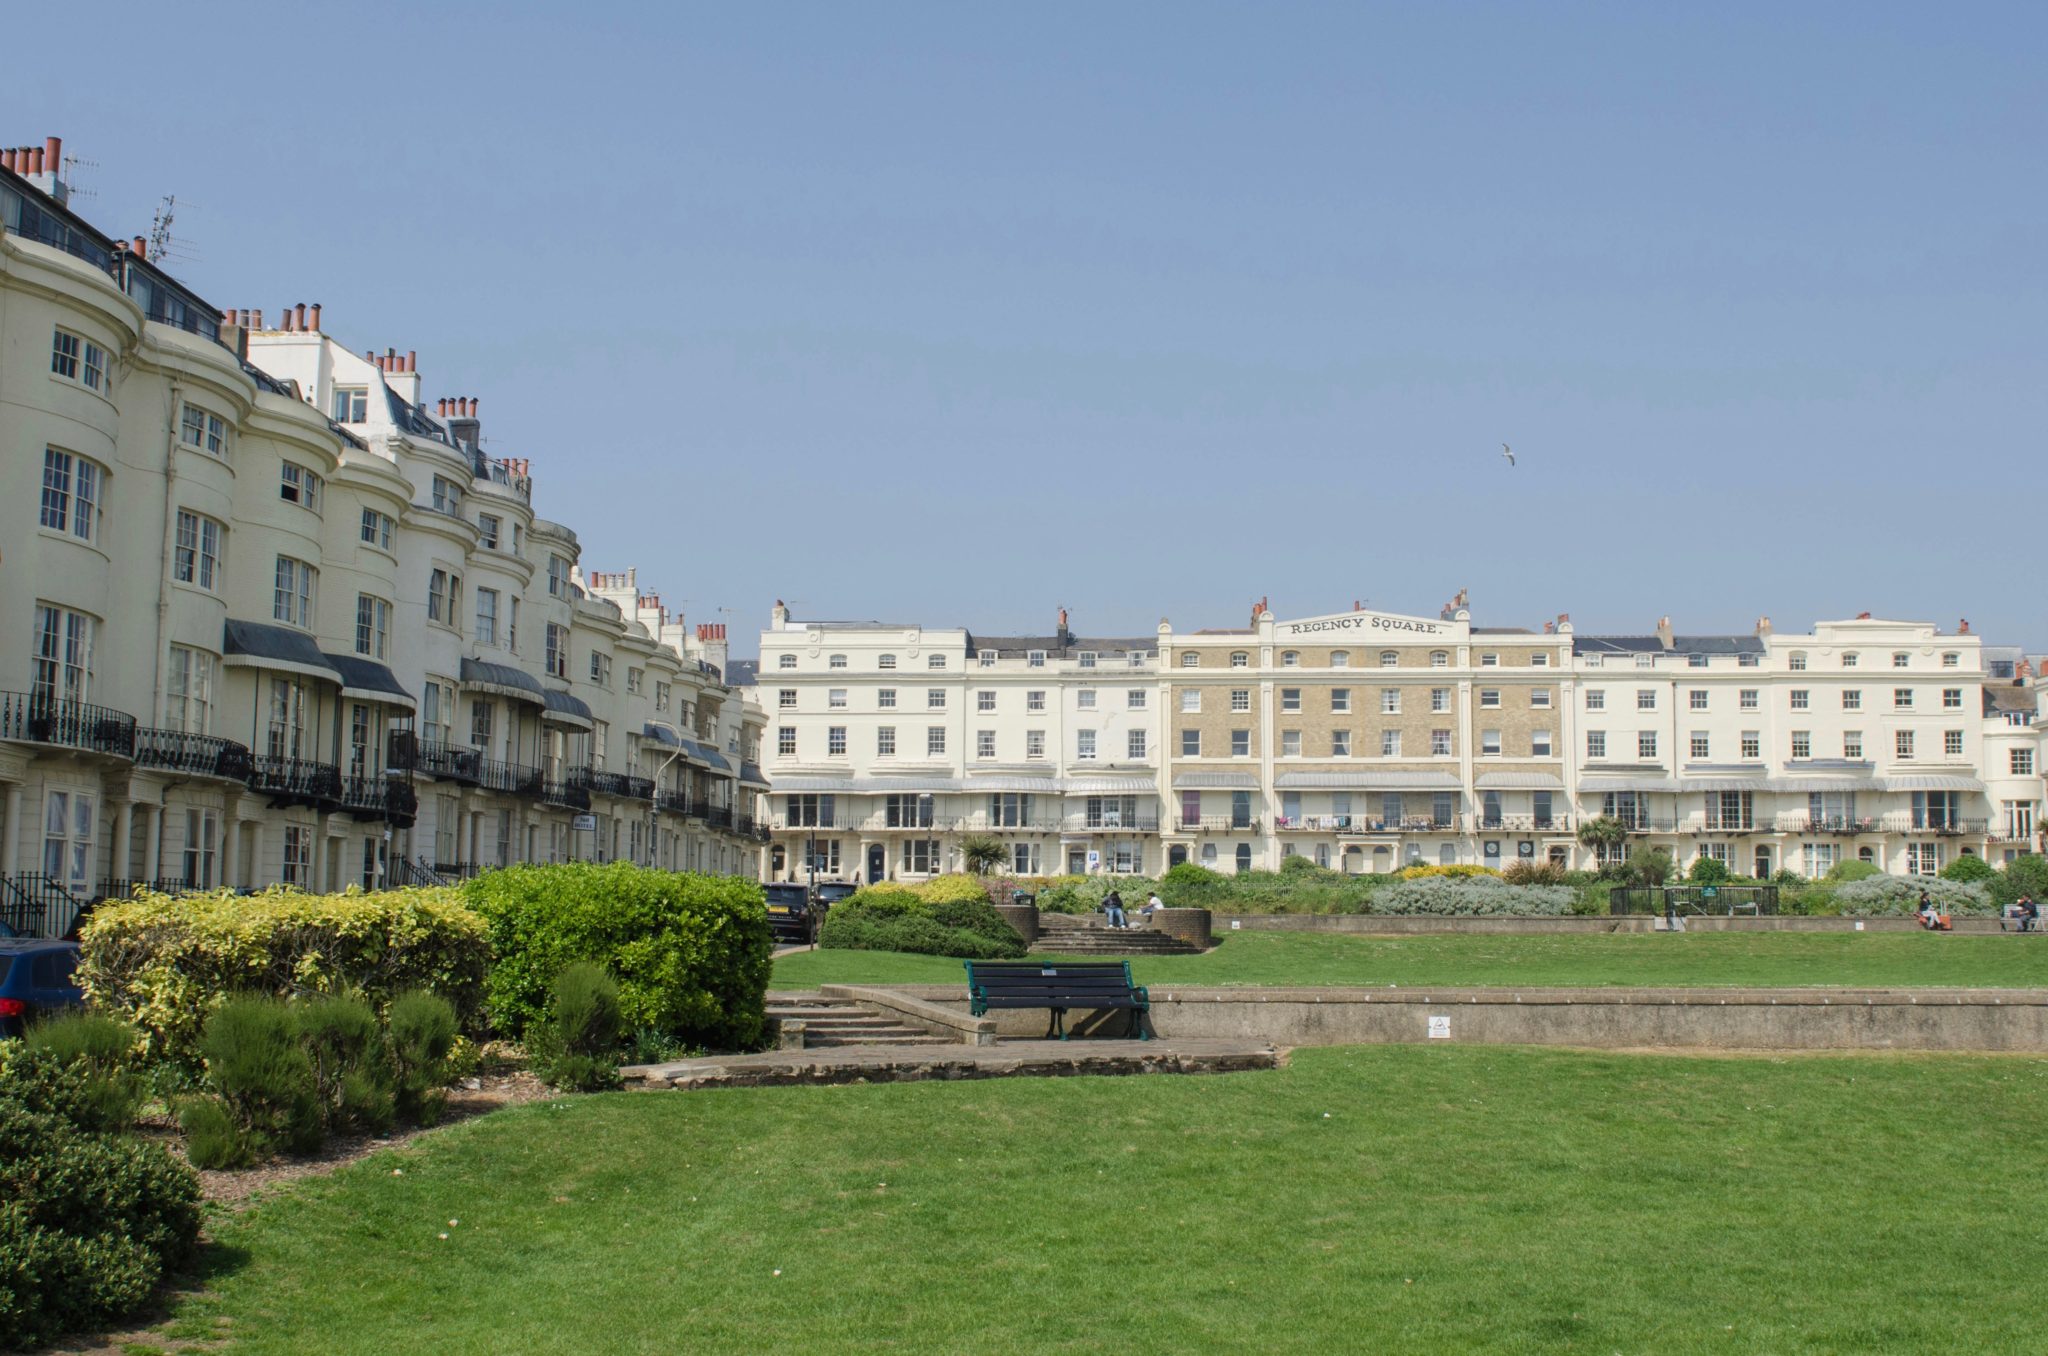 Der Regency Square in Brighton ist die kleine grüne Lunge der britischen Küstenstadt.